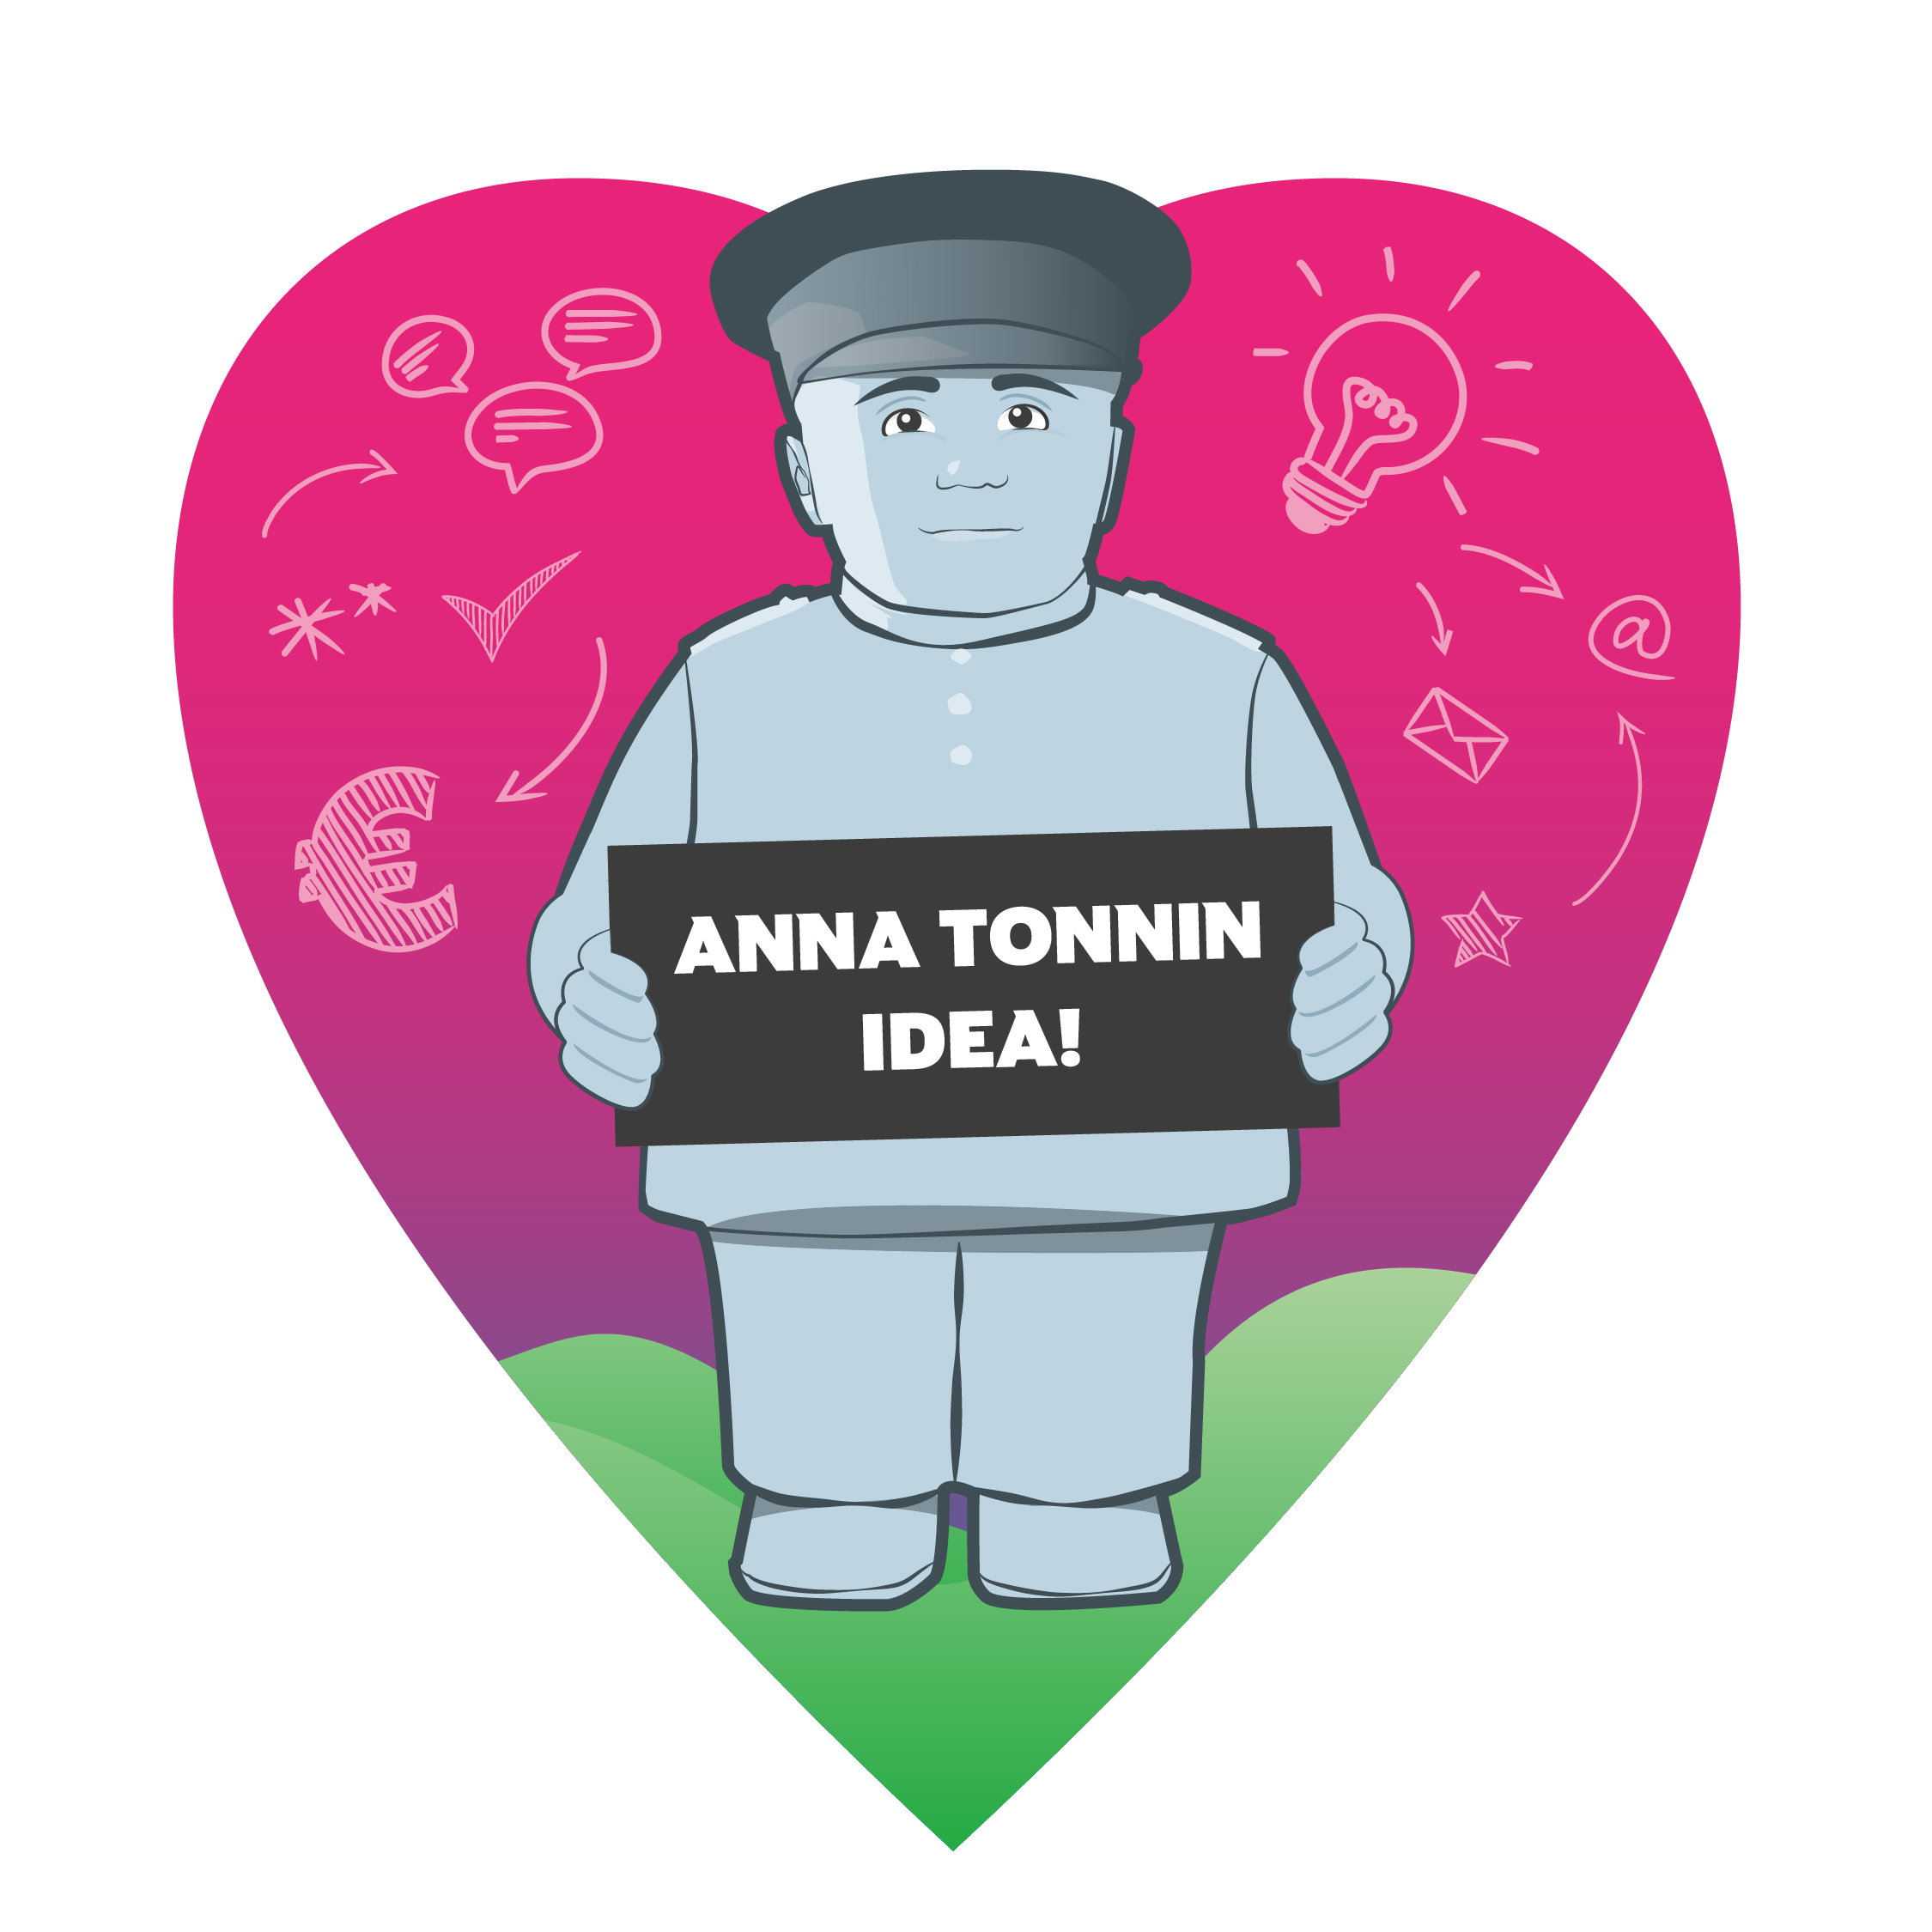 Tonnin idea -kilpailun logo, jossa piirretty Toripolliisi ja teksti: Anna tonnin idea.